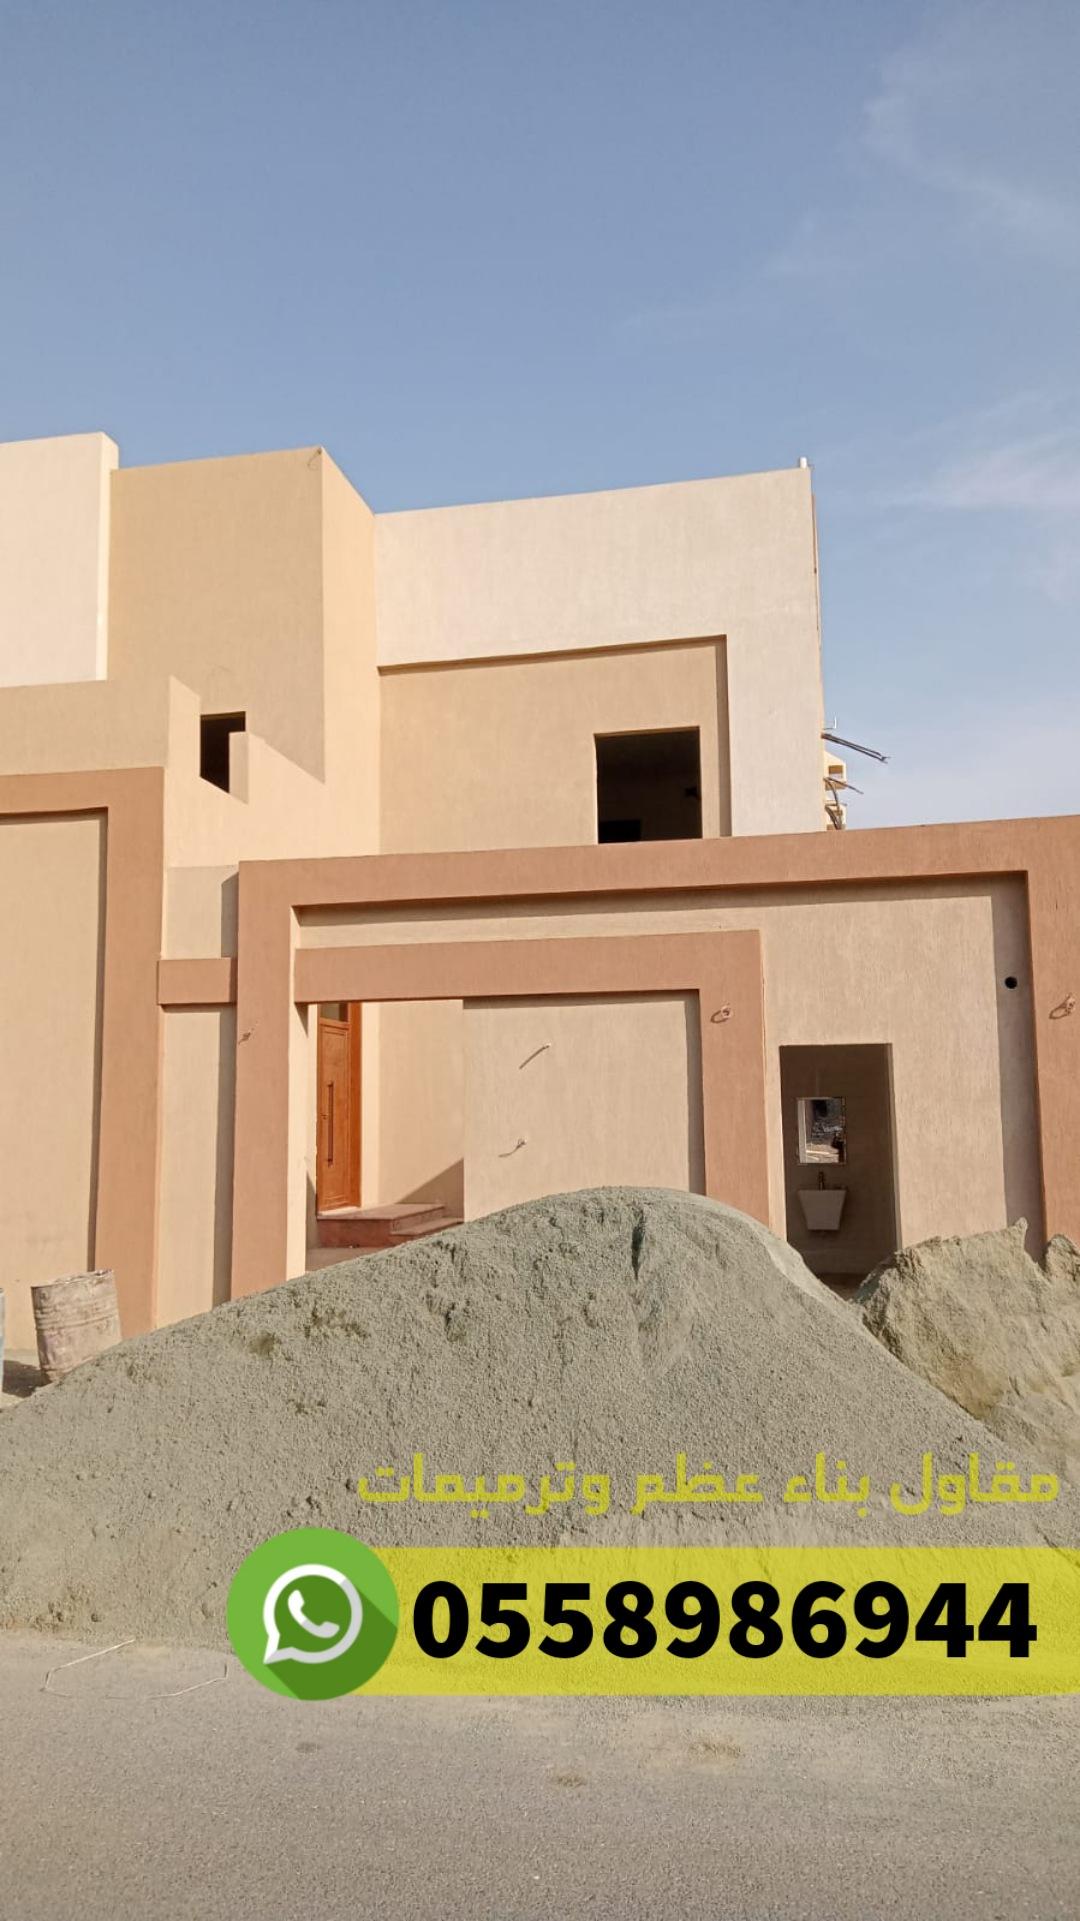 شركة مقاولات عامة معماري عظم في جدة, 0558986944